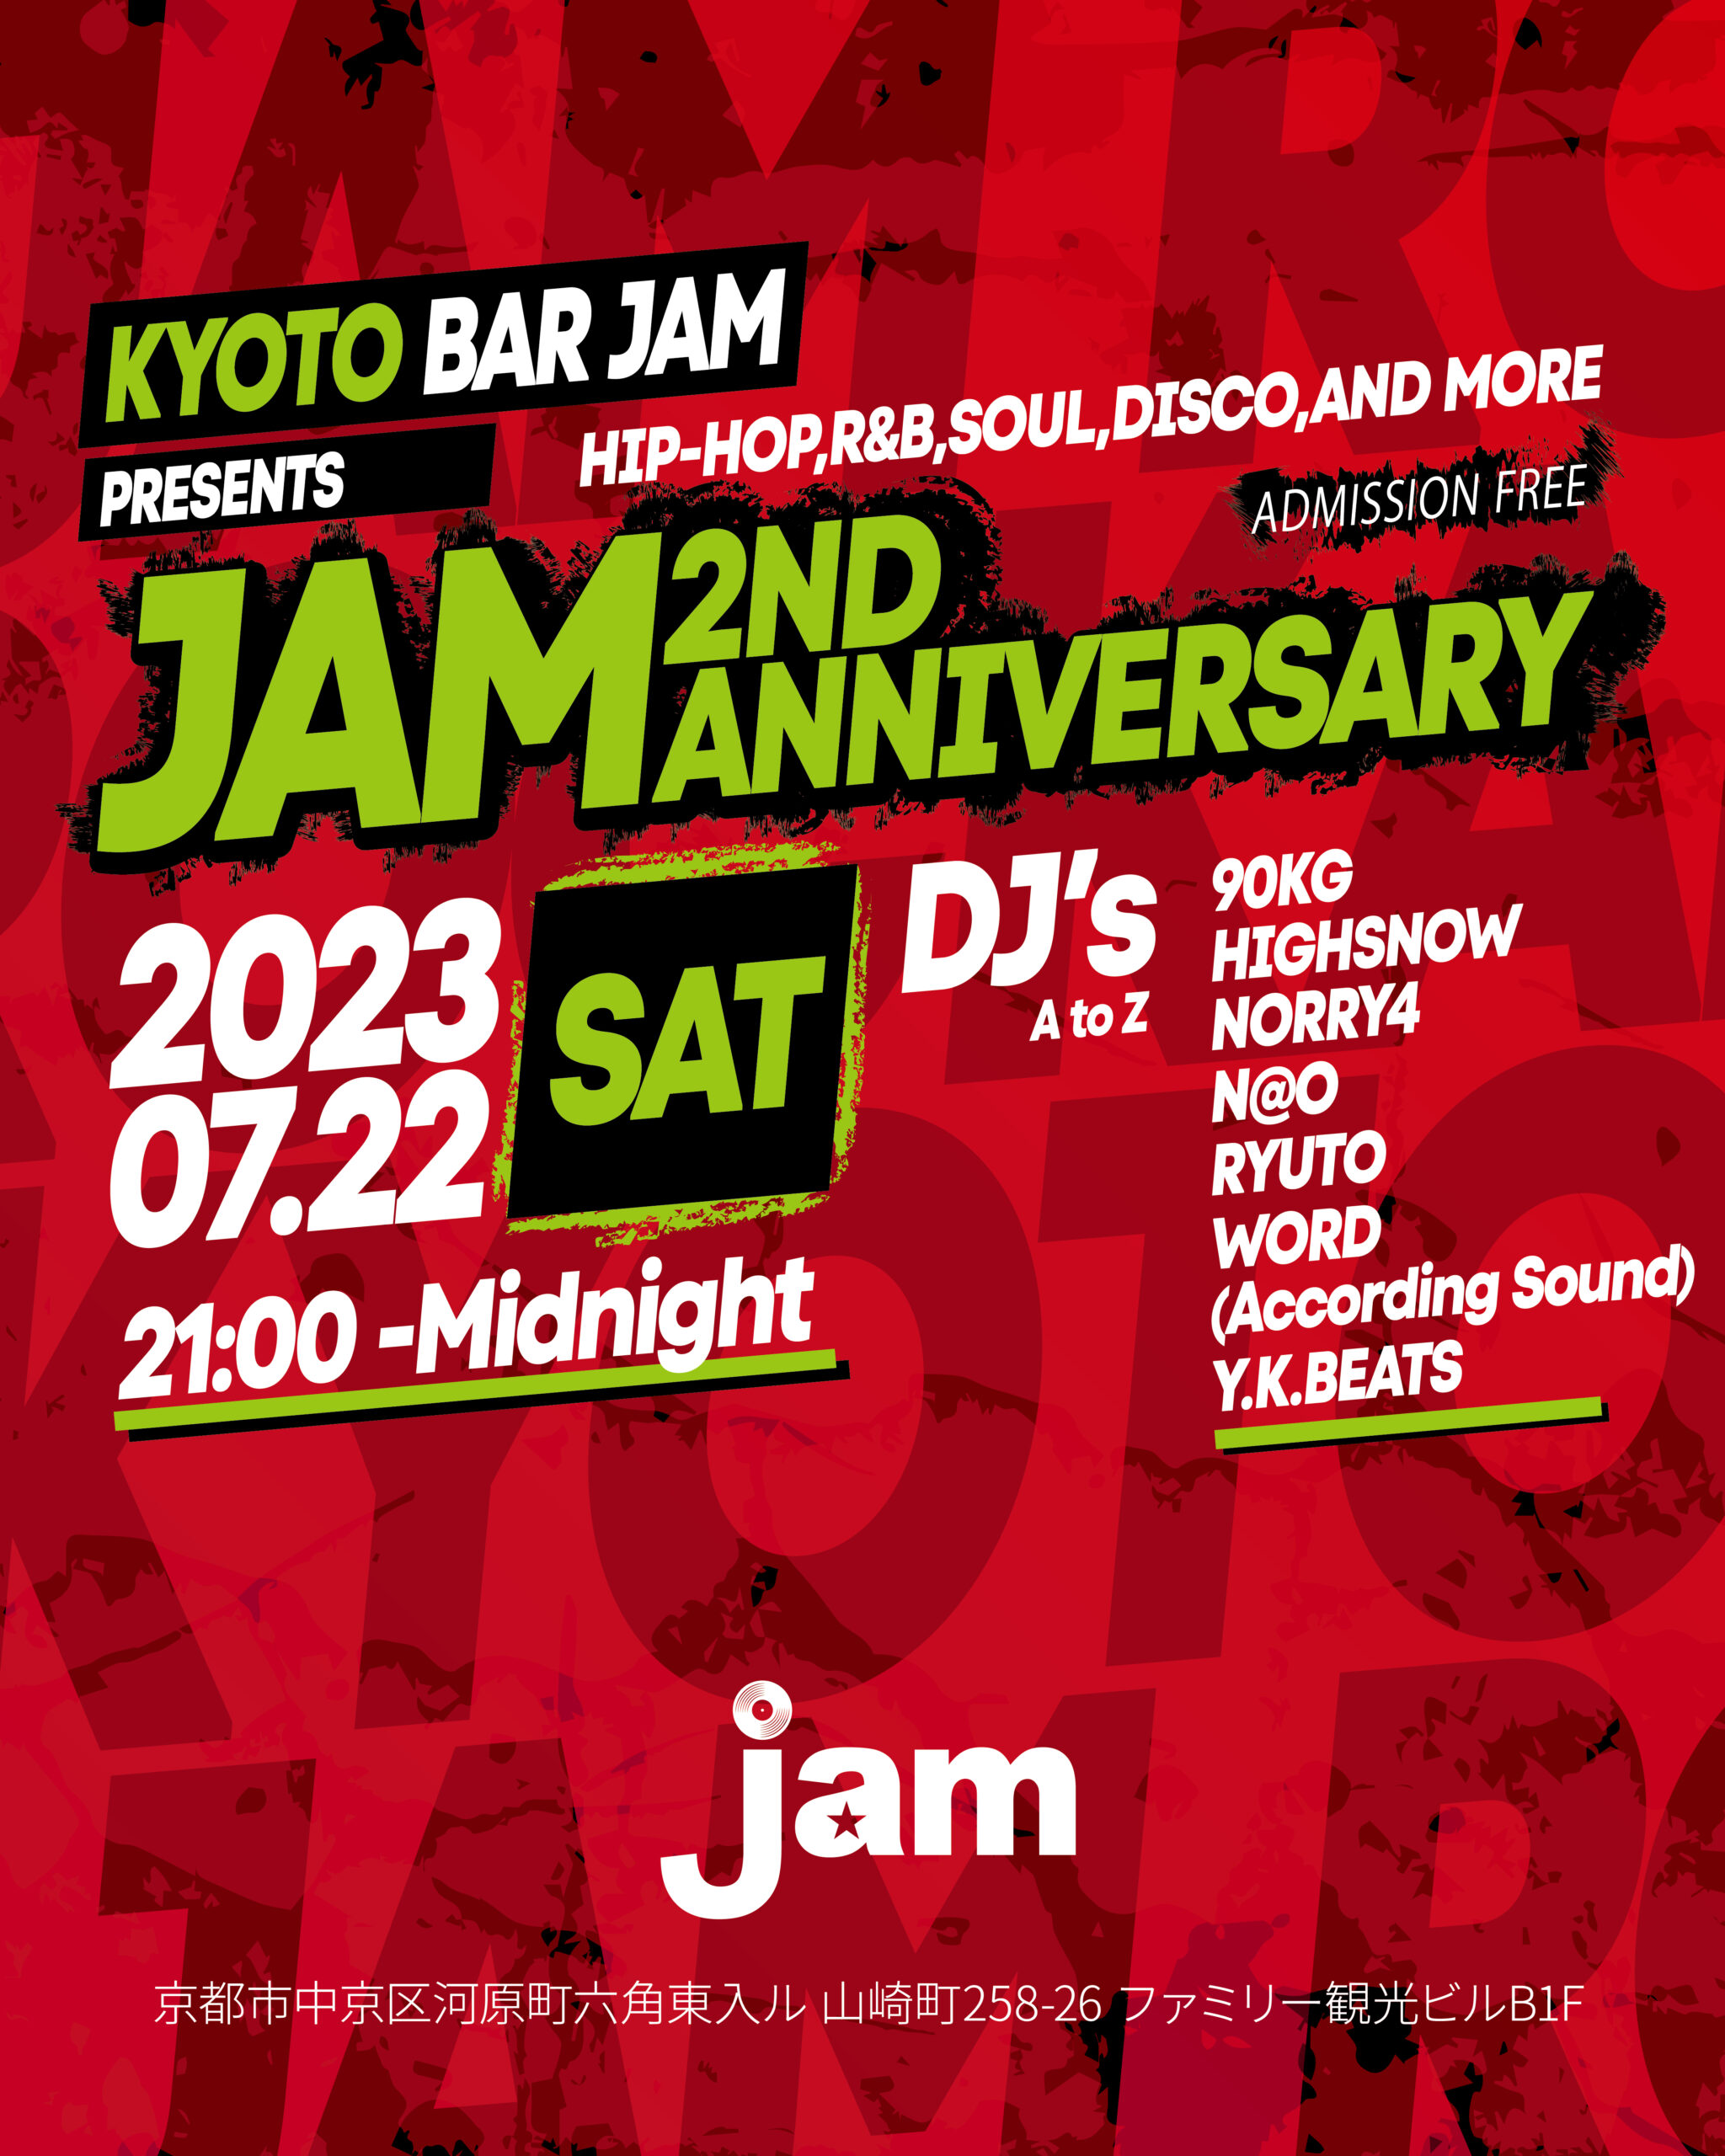 【祝2周年】Jam 2nd Anniverary @Kyoto_bar_jam 2023.07.22 sat